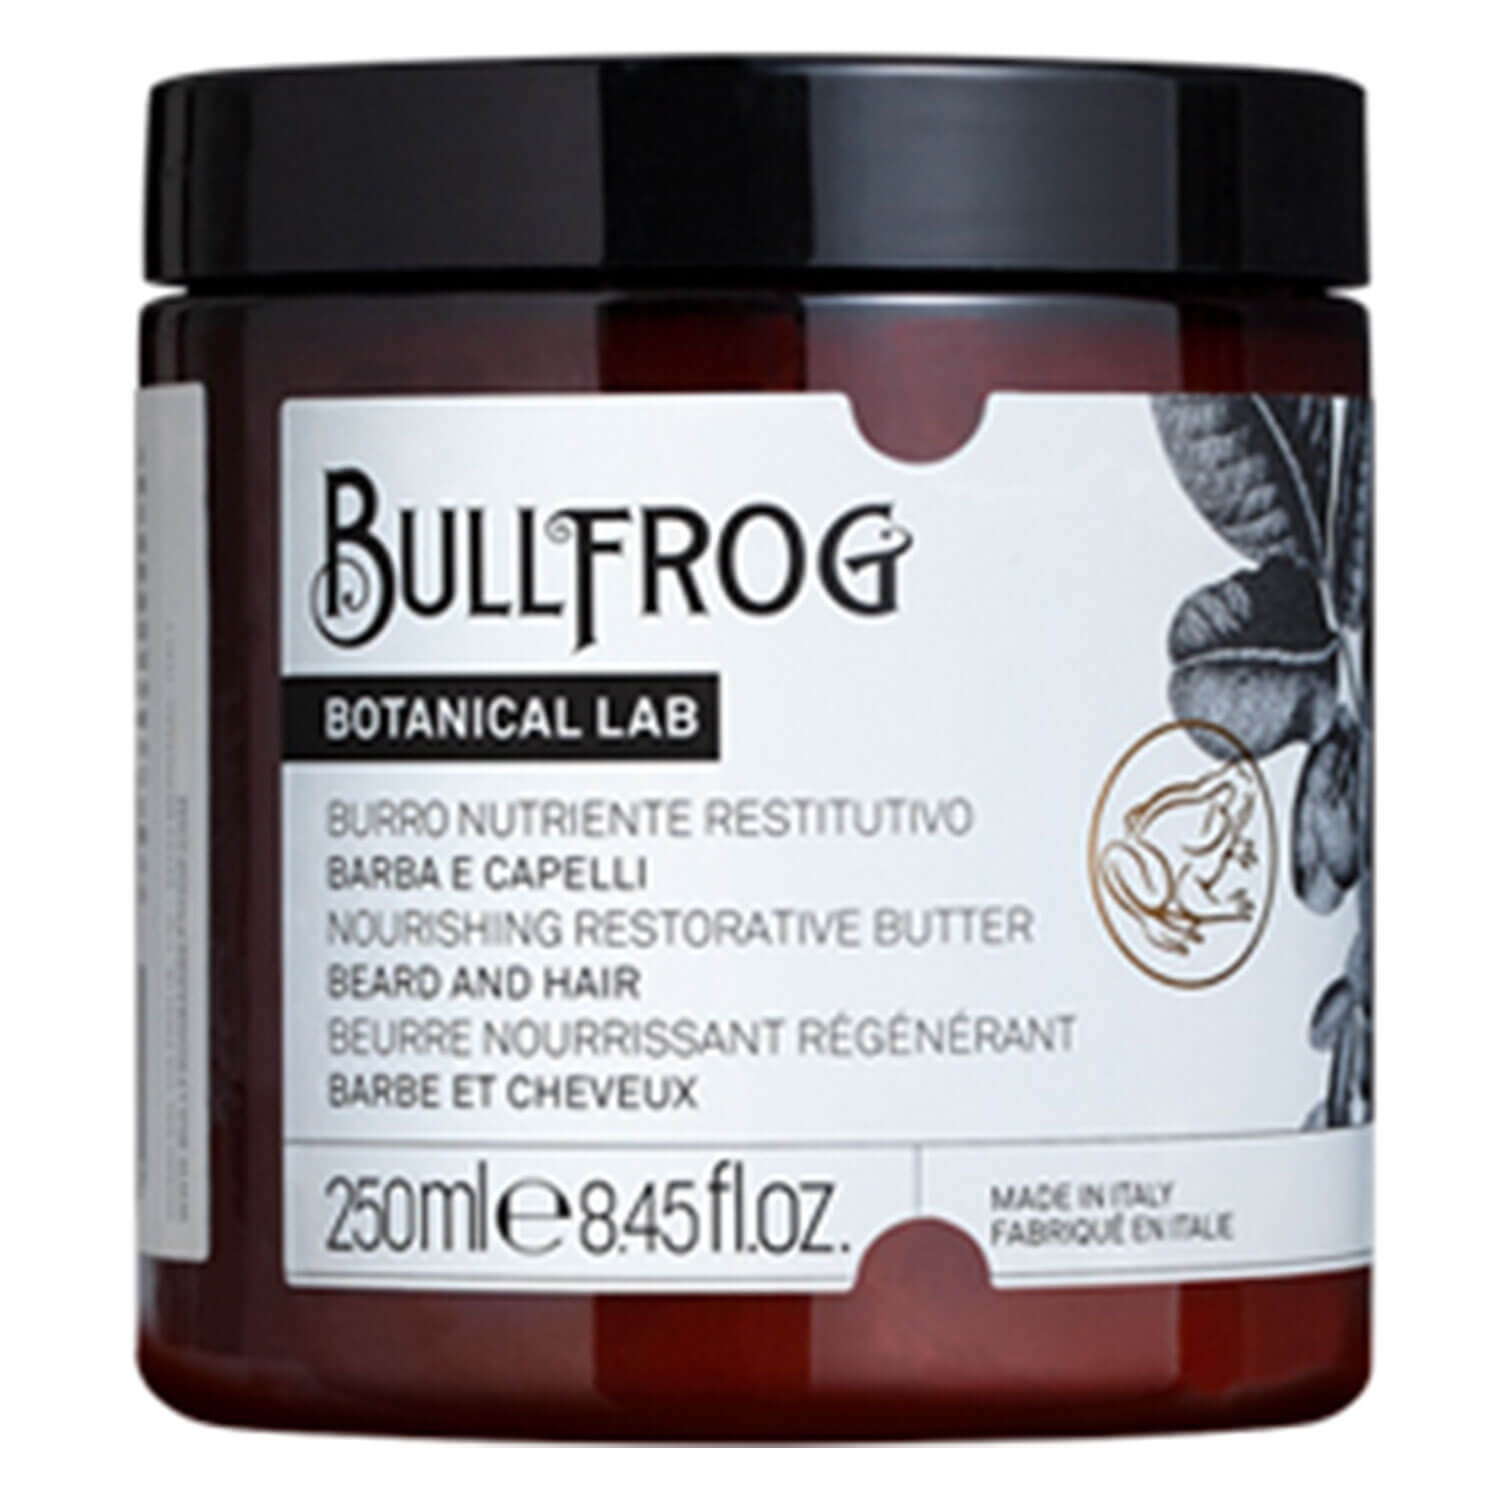 Produktbild von BULLFROG - Nourishing Restorative Butter